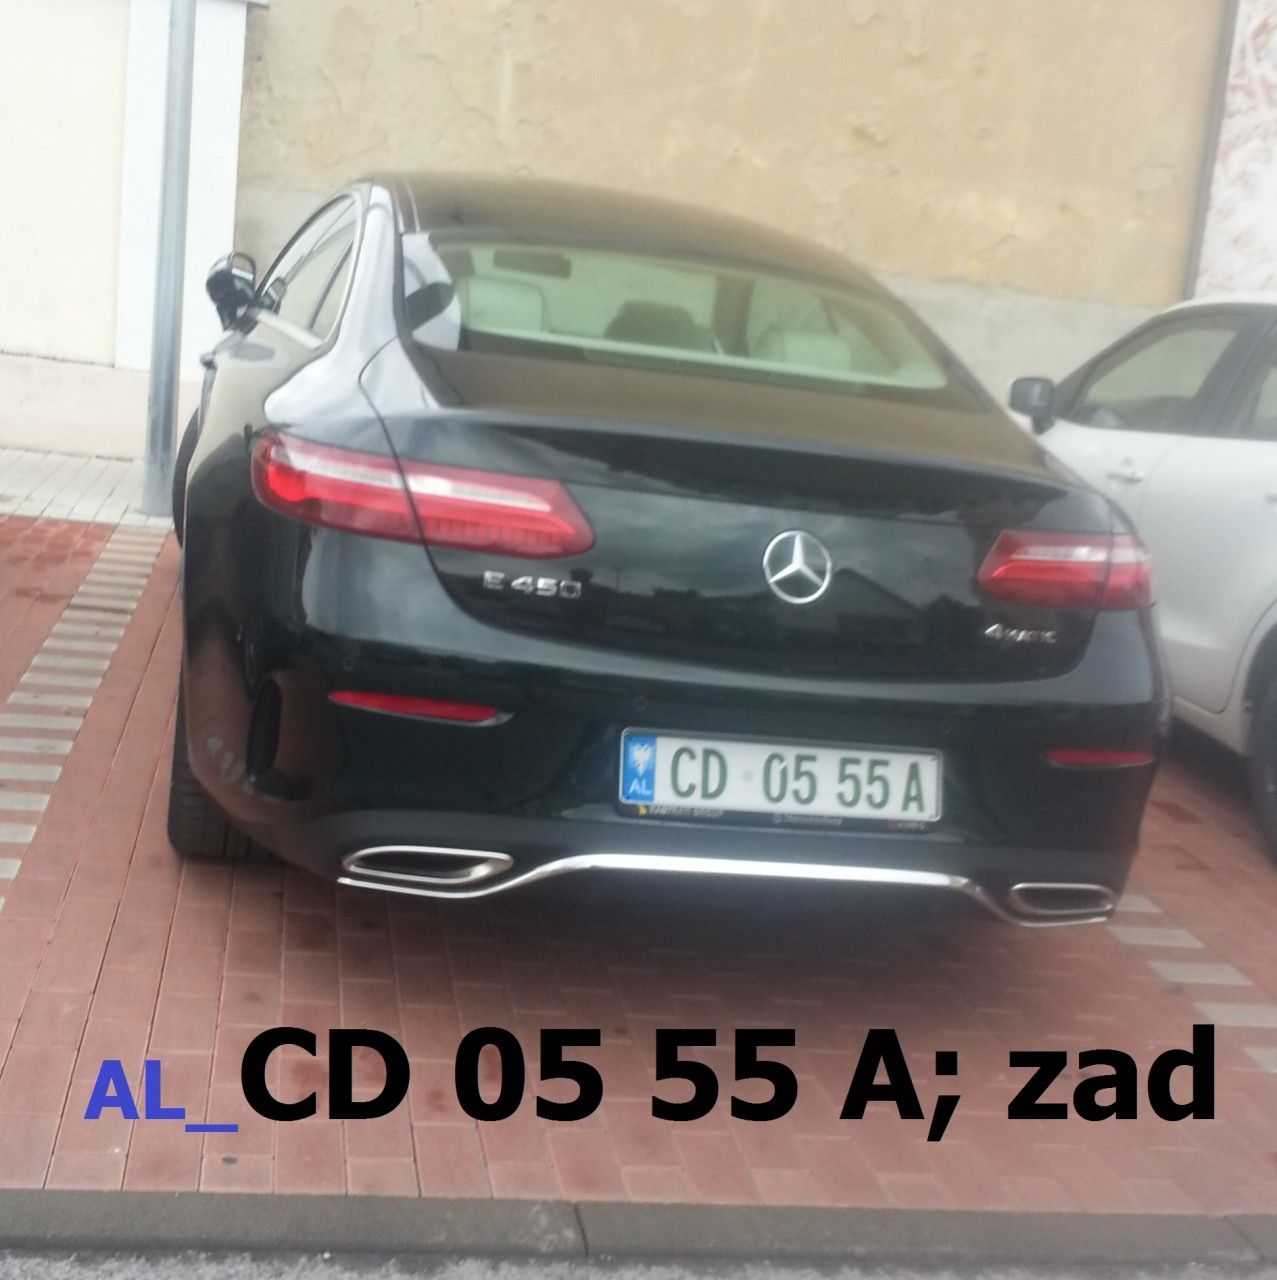 AL_CD 05 55 A; zad